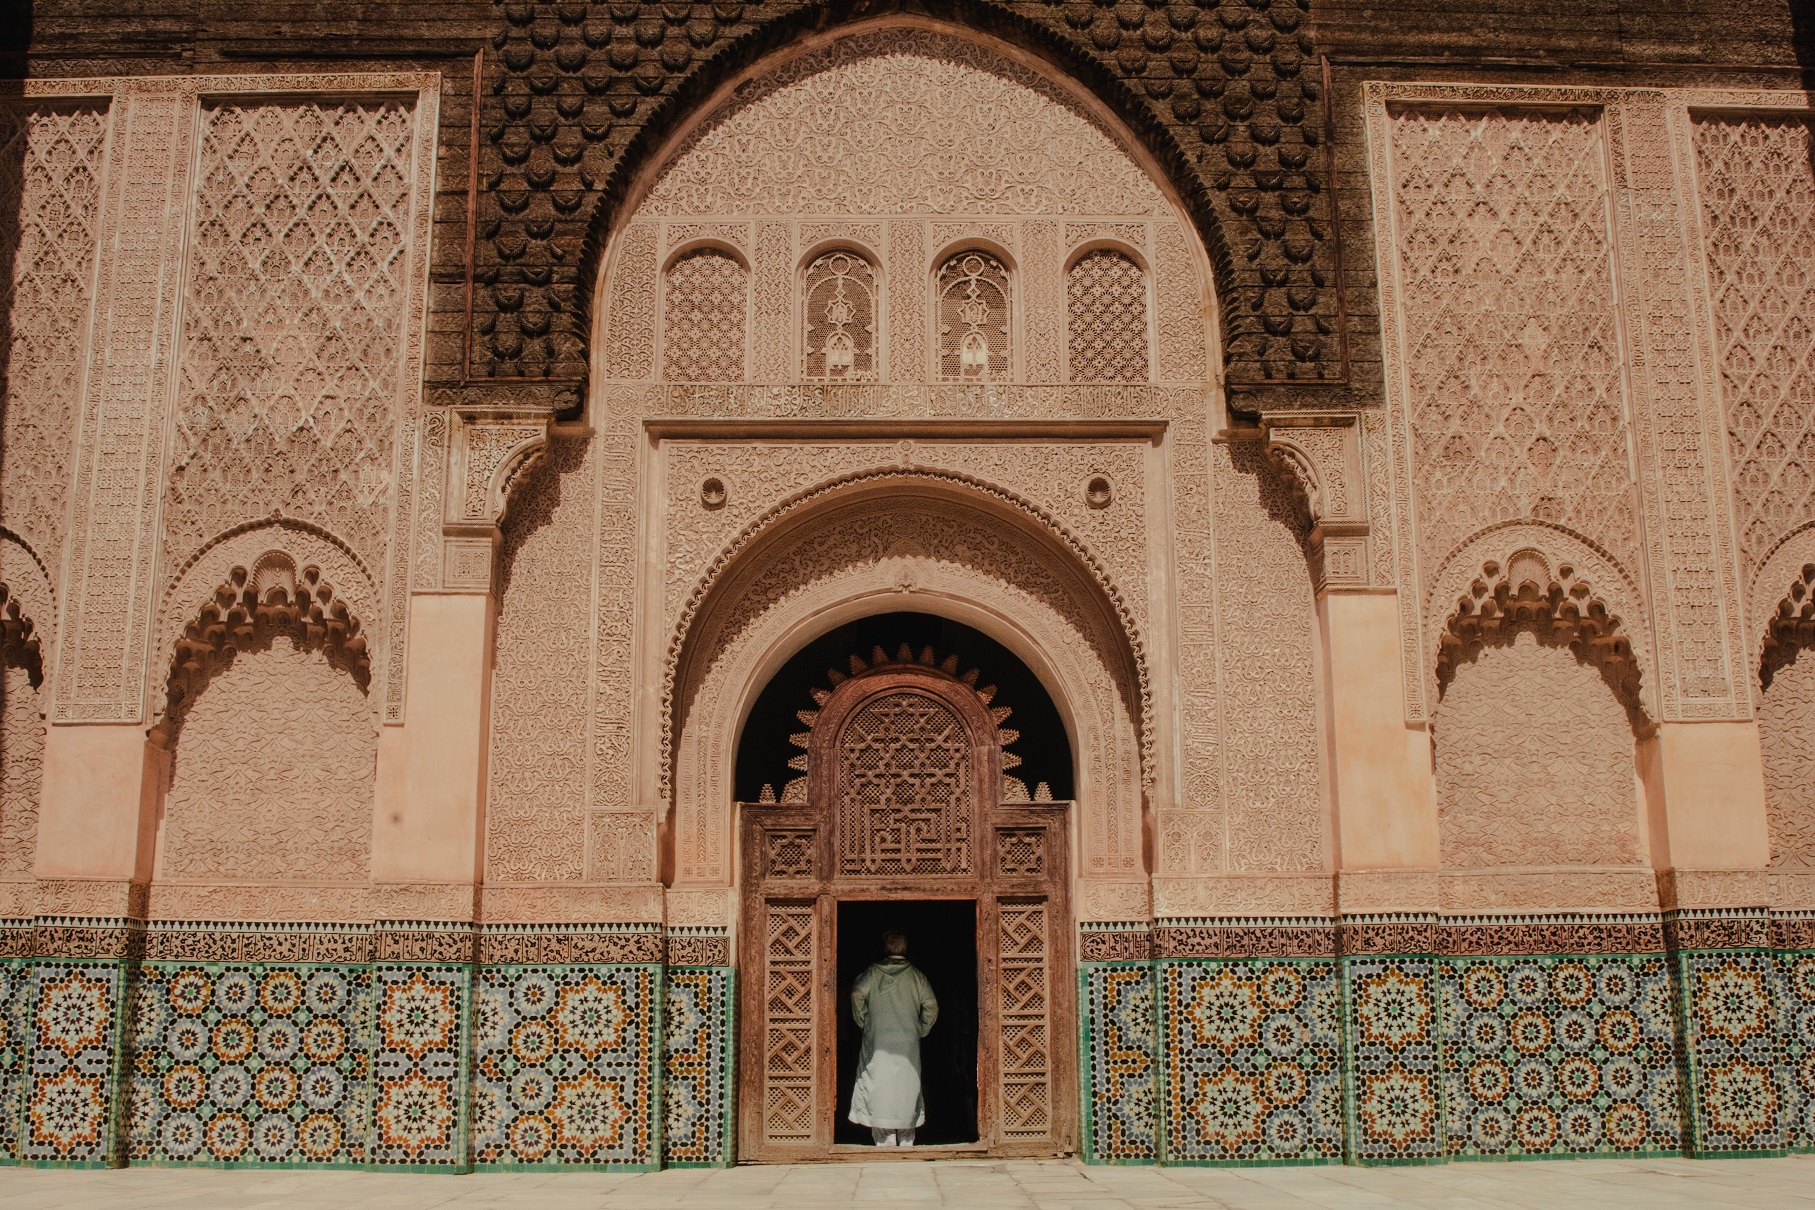 Day 06: Marrakech